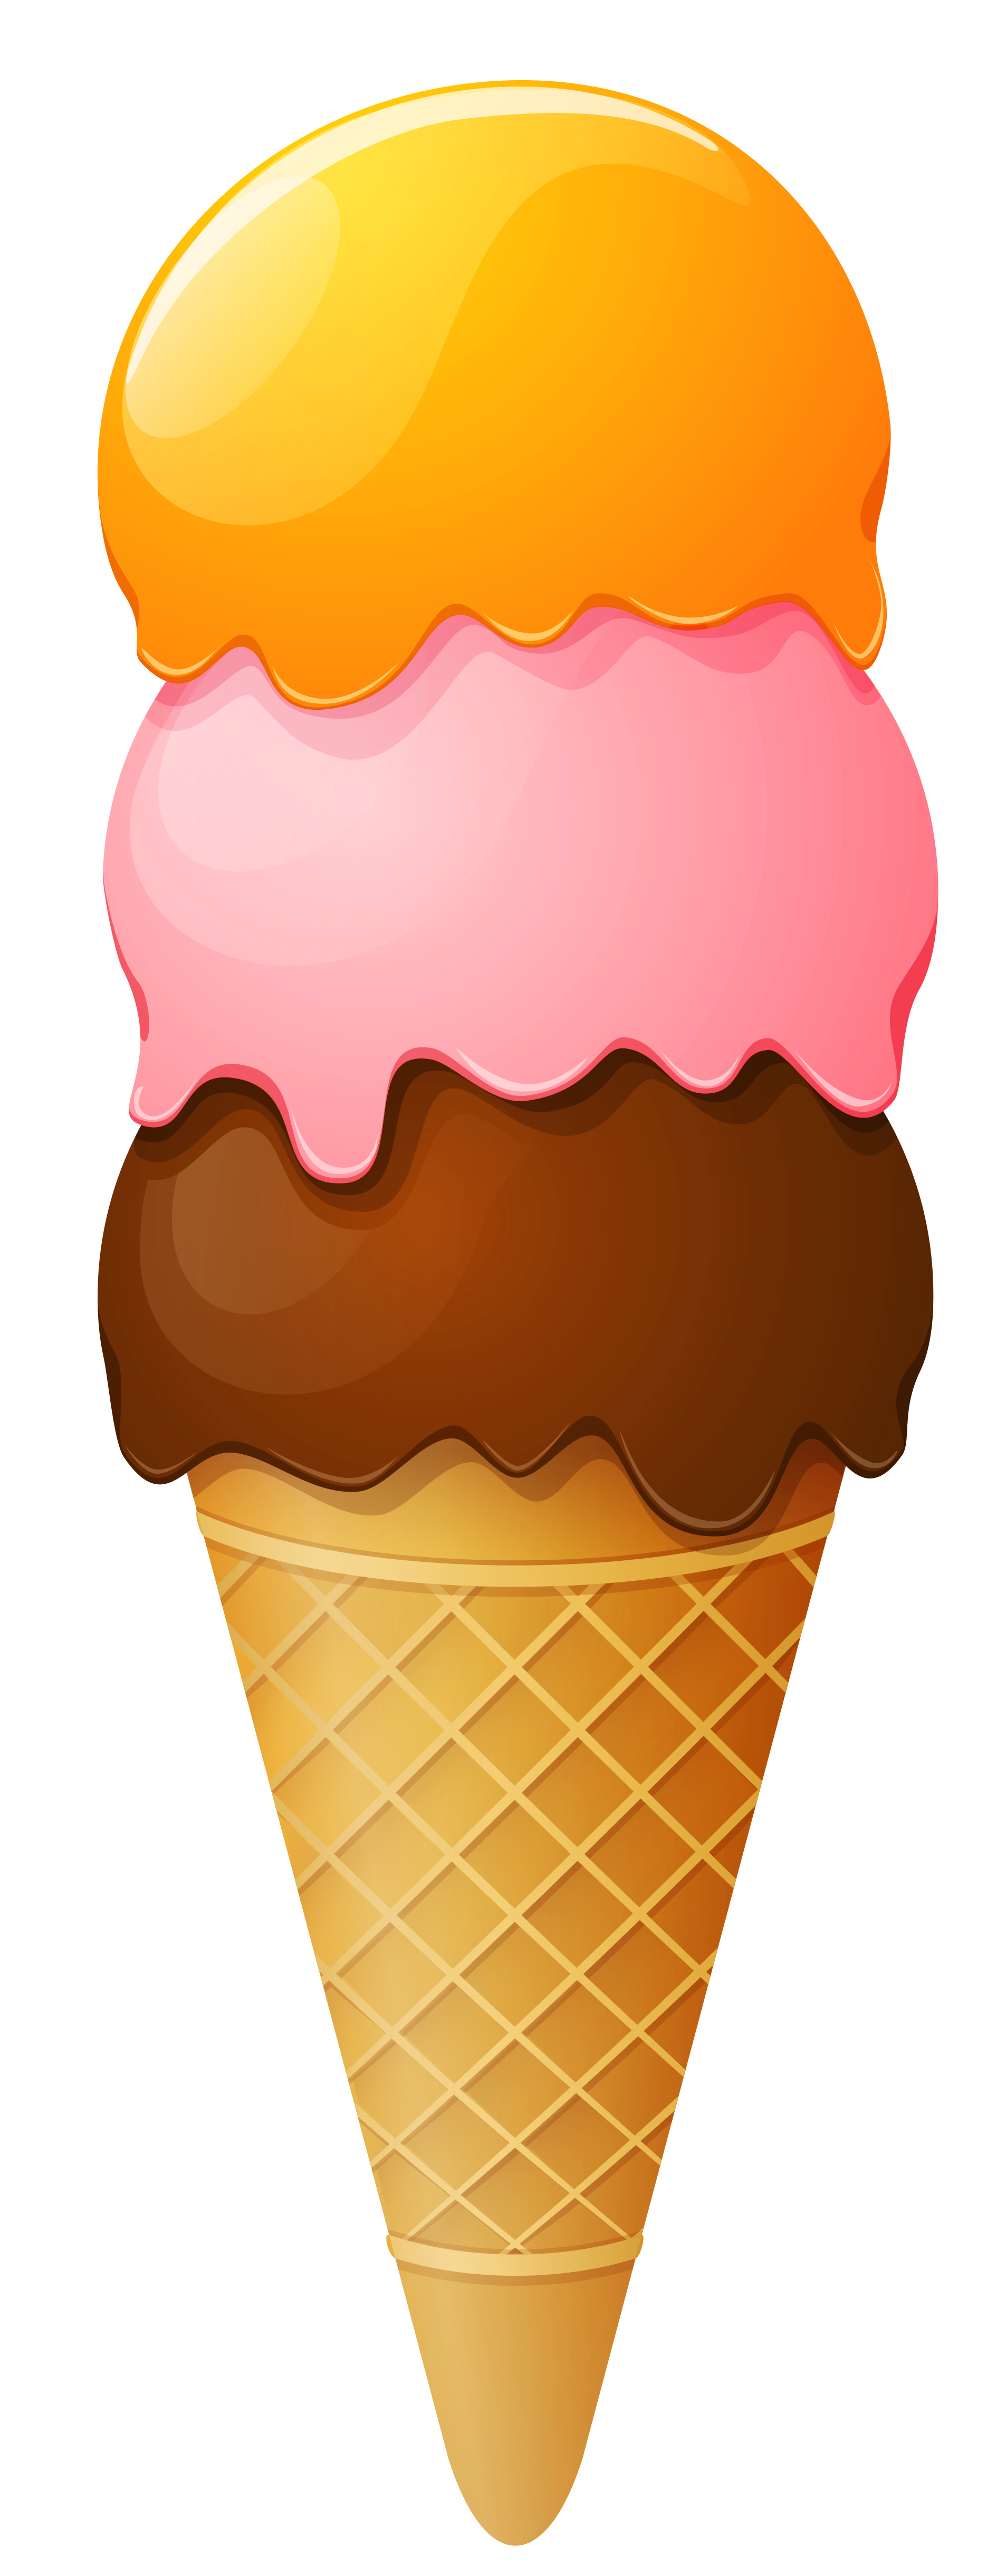 Clipart ice cream cone tumundografico